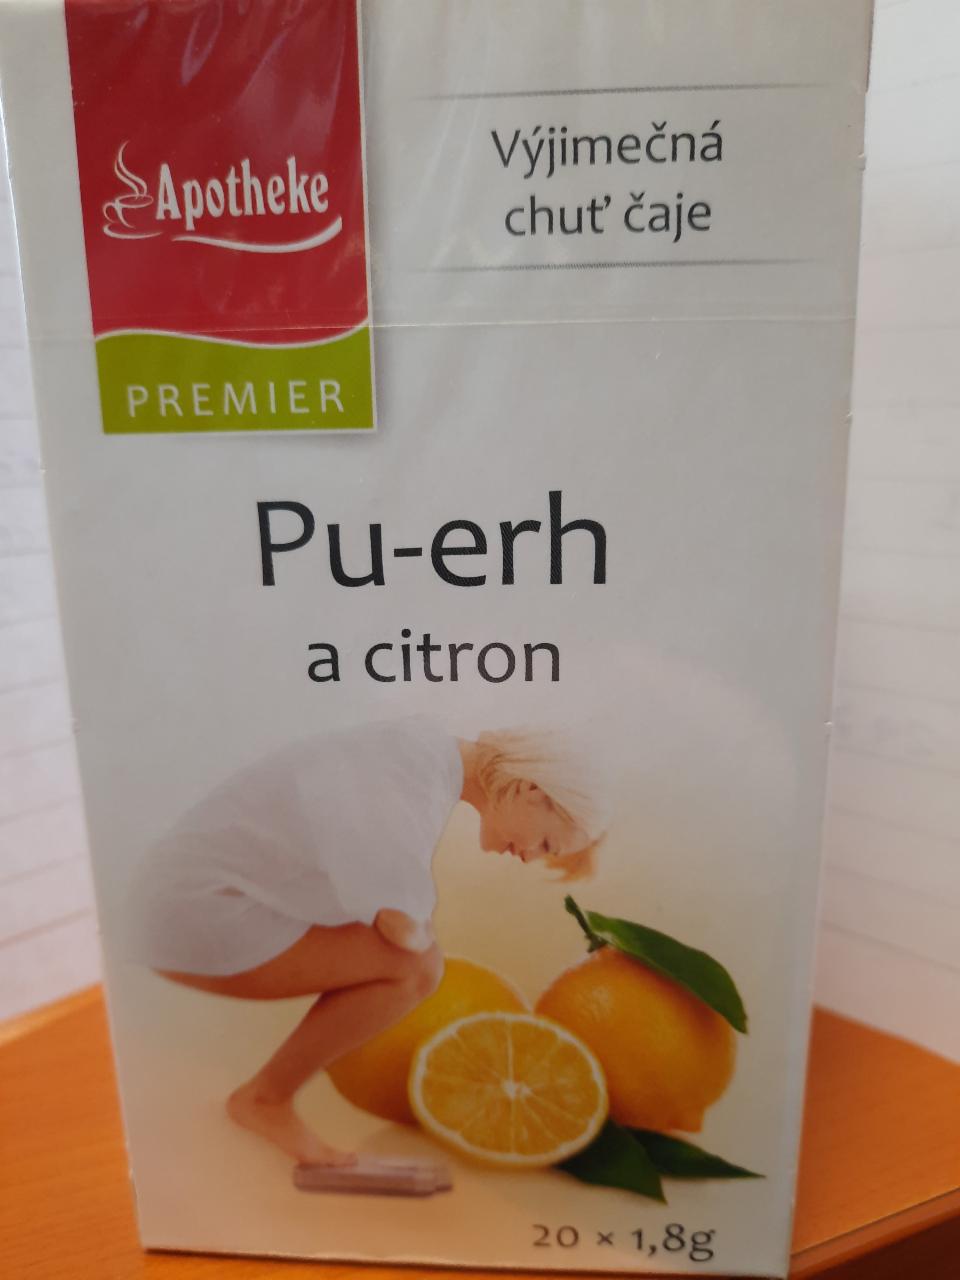 Zdjęcia - Chińska herbata Pu-erh o aromacie cytrynowym